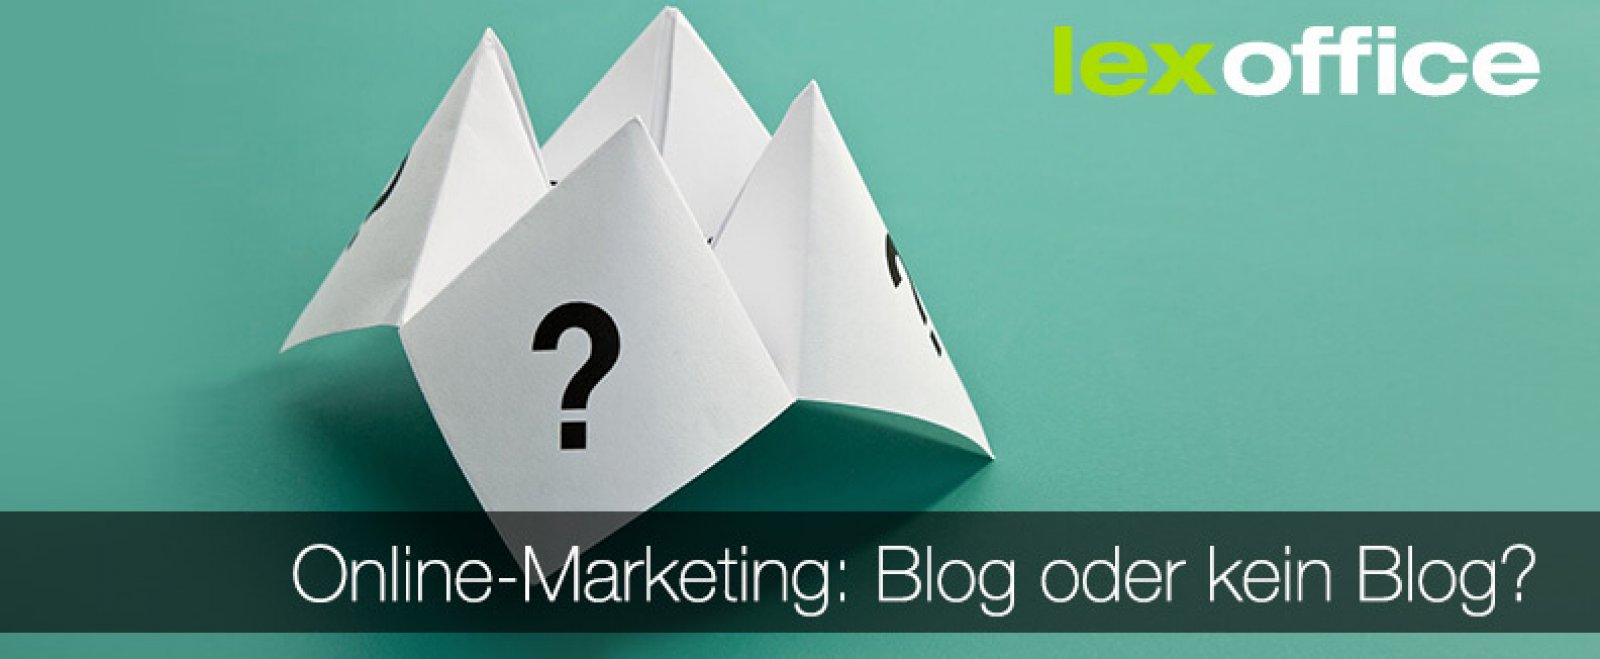 Blog oder kein Blog? Weblogs in unserer Serie zum Online-Marketing